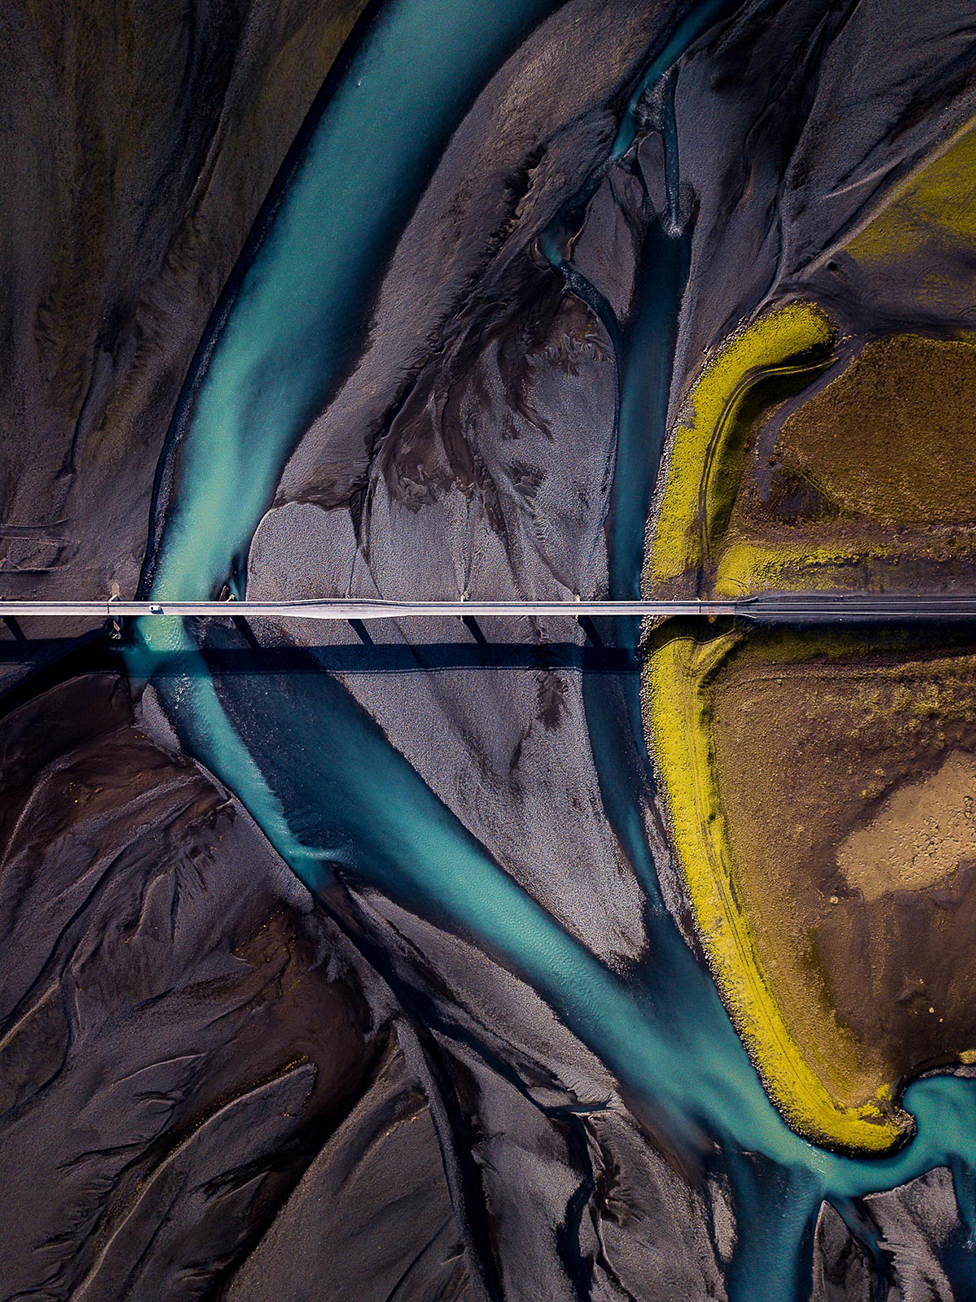 Вид с воздуха на землю, показывающий темный песок с прорезавшей его синей рекой